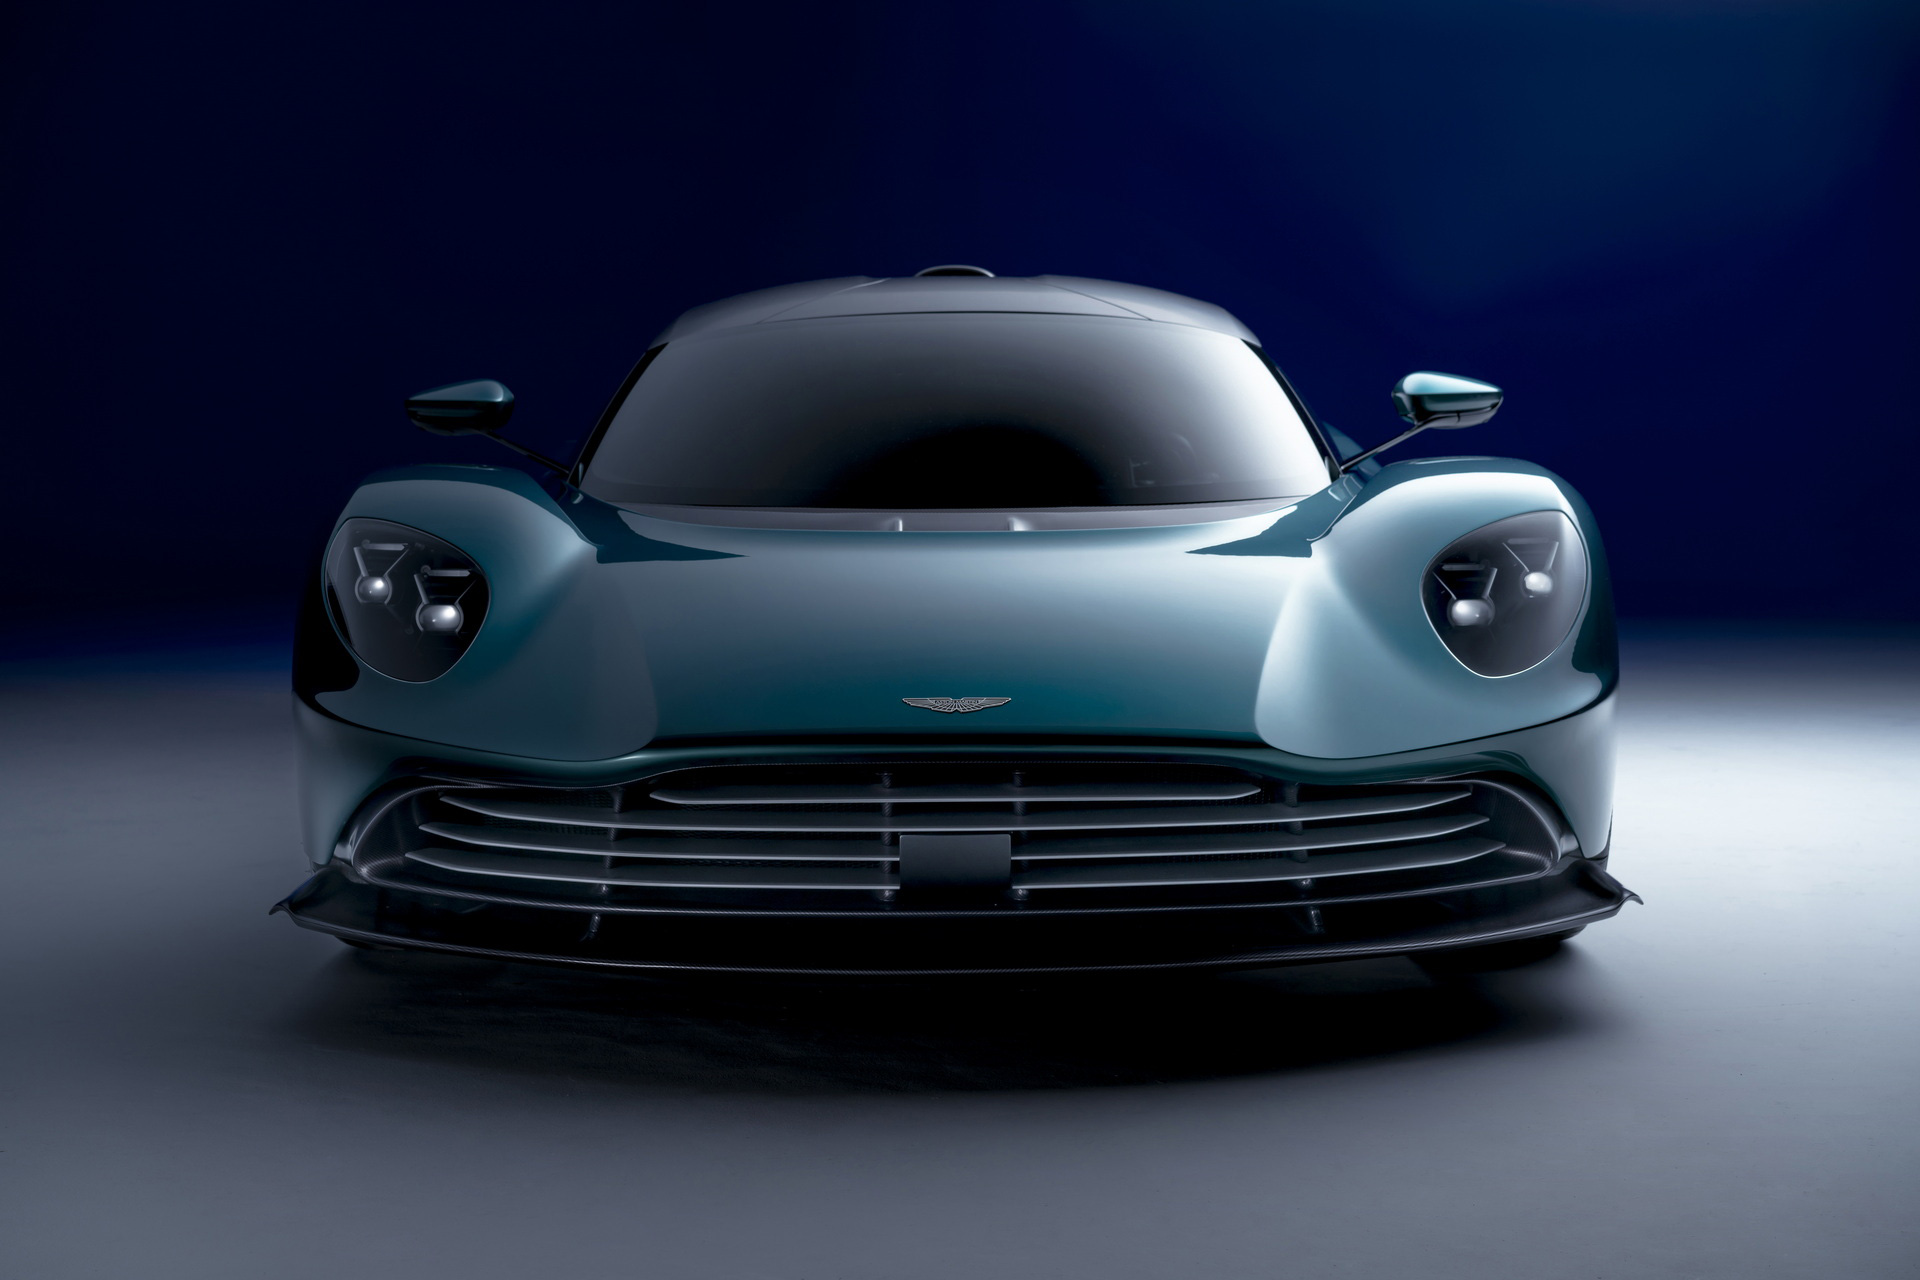 Ra mắt Aston Martin Valhalla bản thương mại - Siêu xe mang thiết kế lạ, hộp số lạ và động cơ hoàn toàn mới của hãng xe Anh quốc